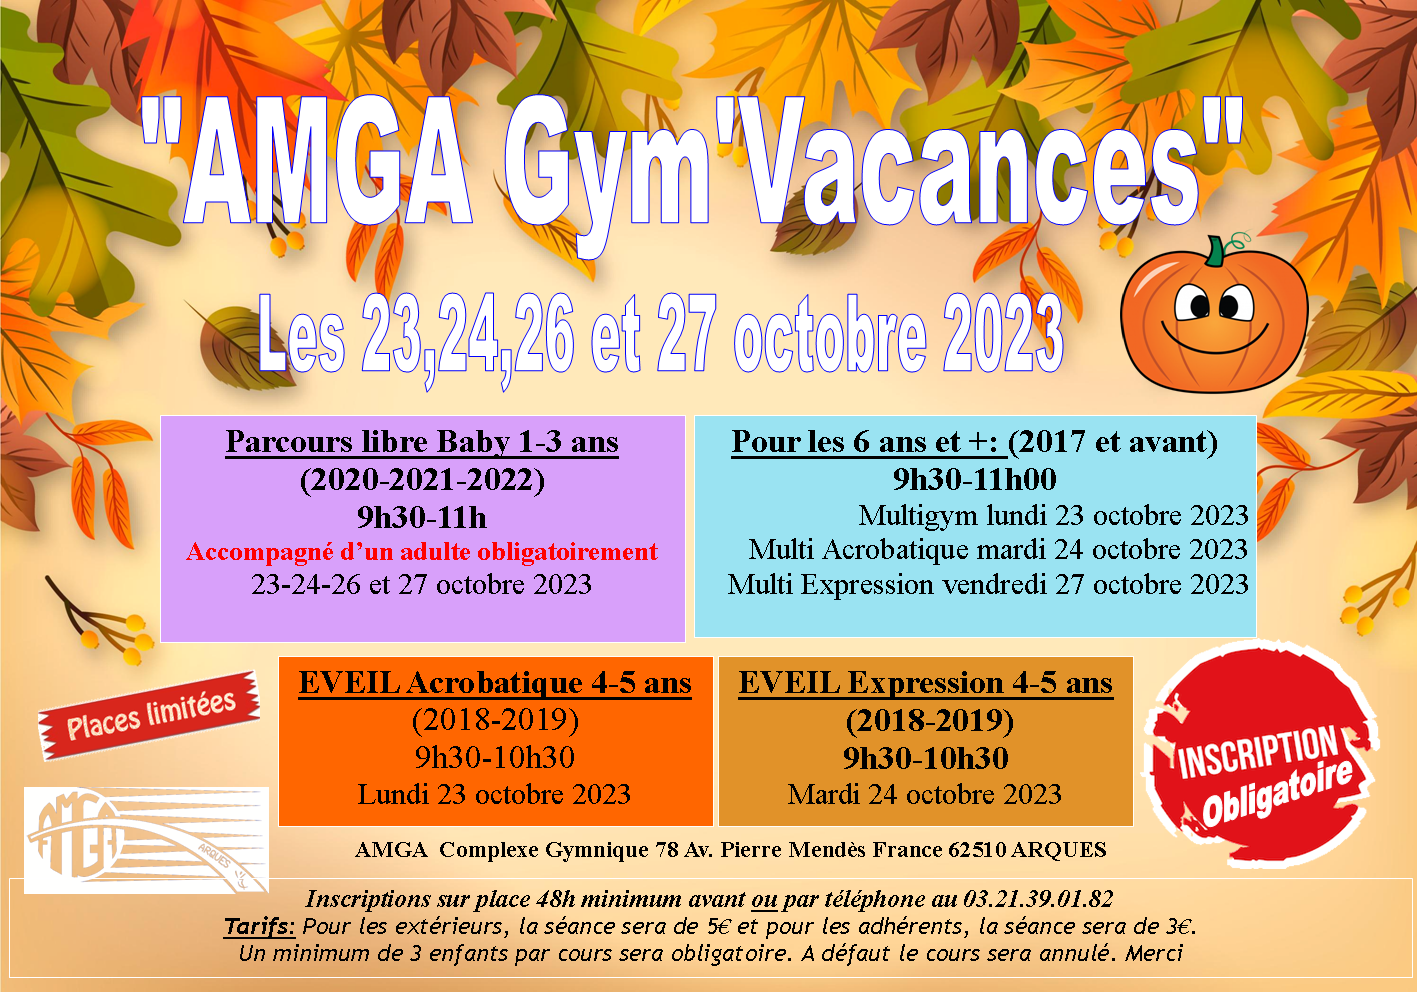 AMGA Gym'Vacances les 23,24, 26 et 27 octobre 2023